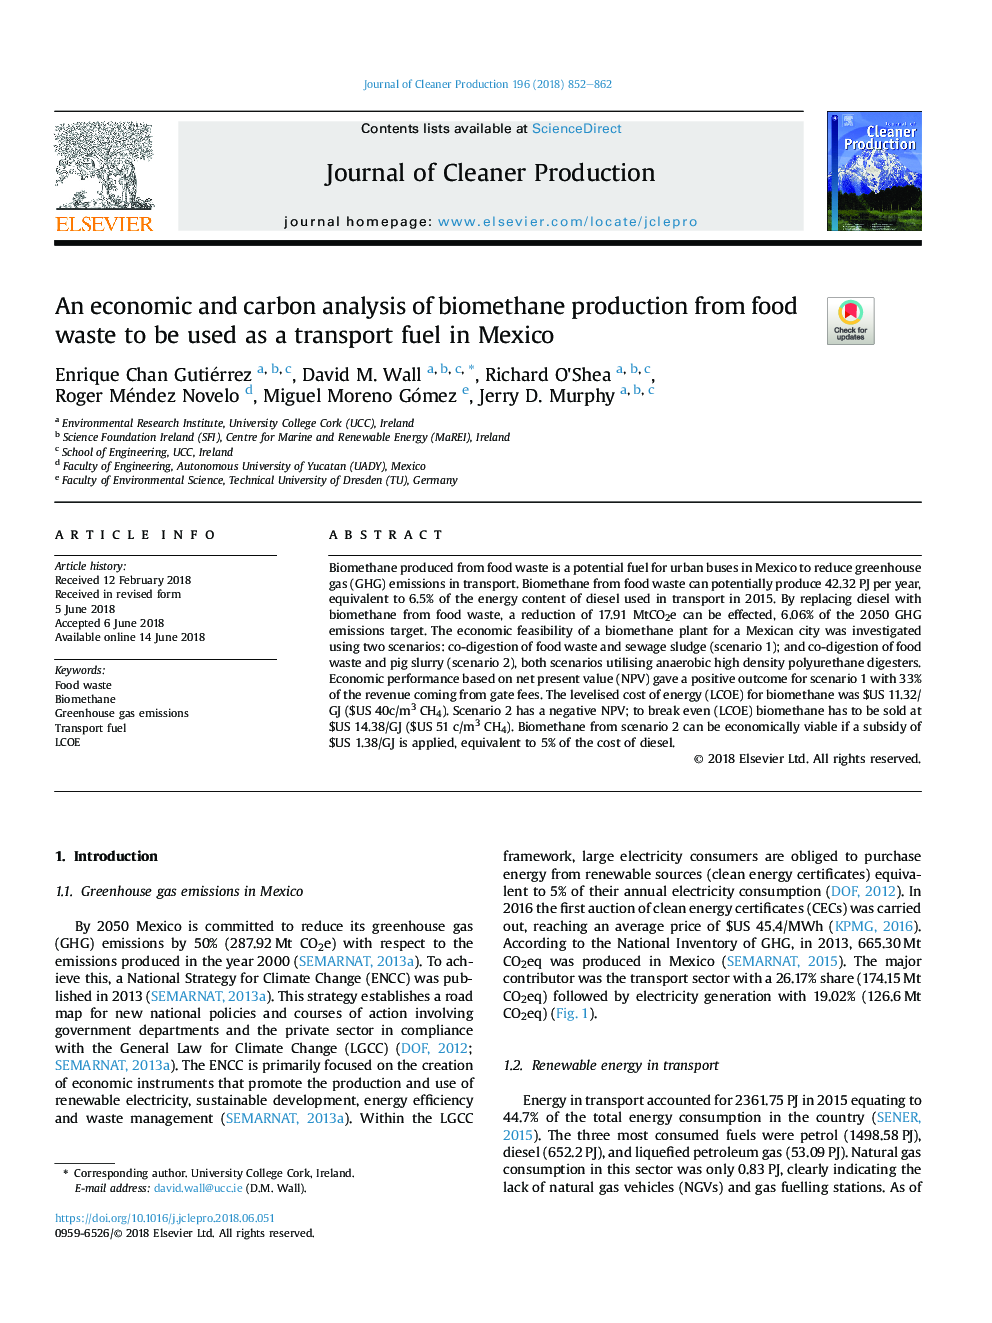 یک تجزیه و تحلیل اقتصادی و کربن تولید بیومتری از زباله های مواد غذایی به عنوان سوخت حمل و نقل در مکزیک استفاده می شود 